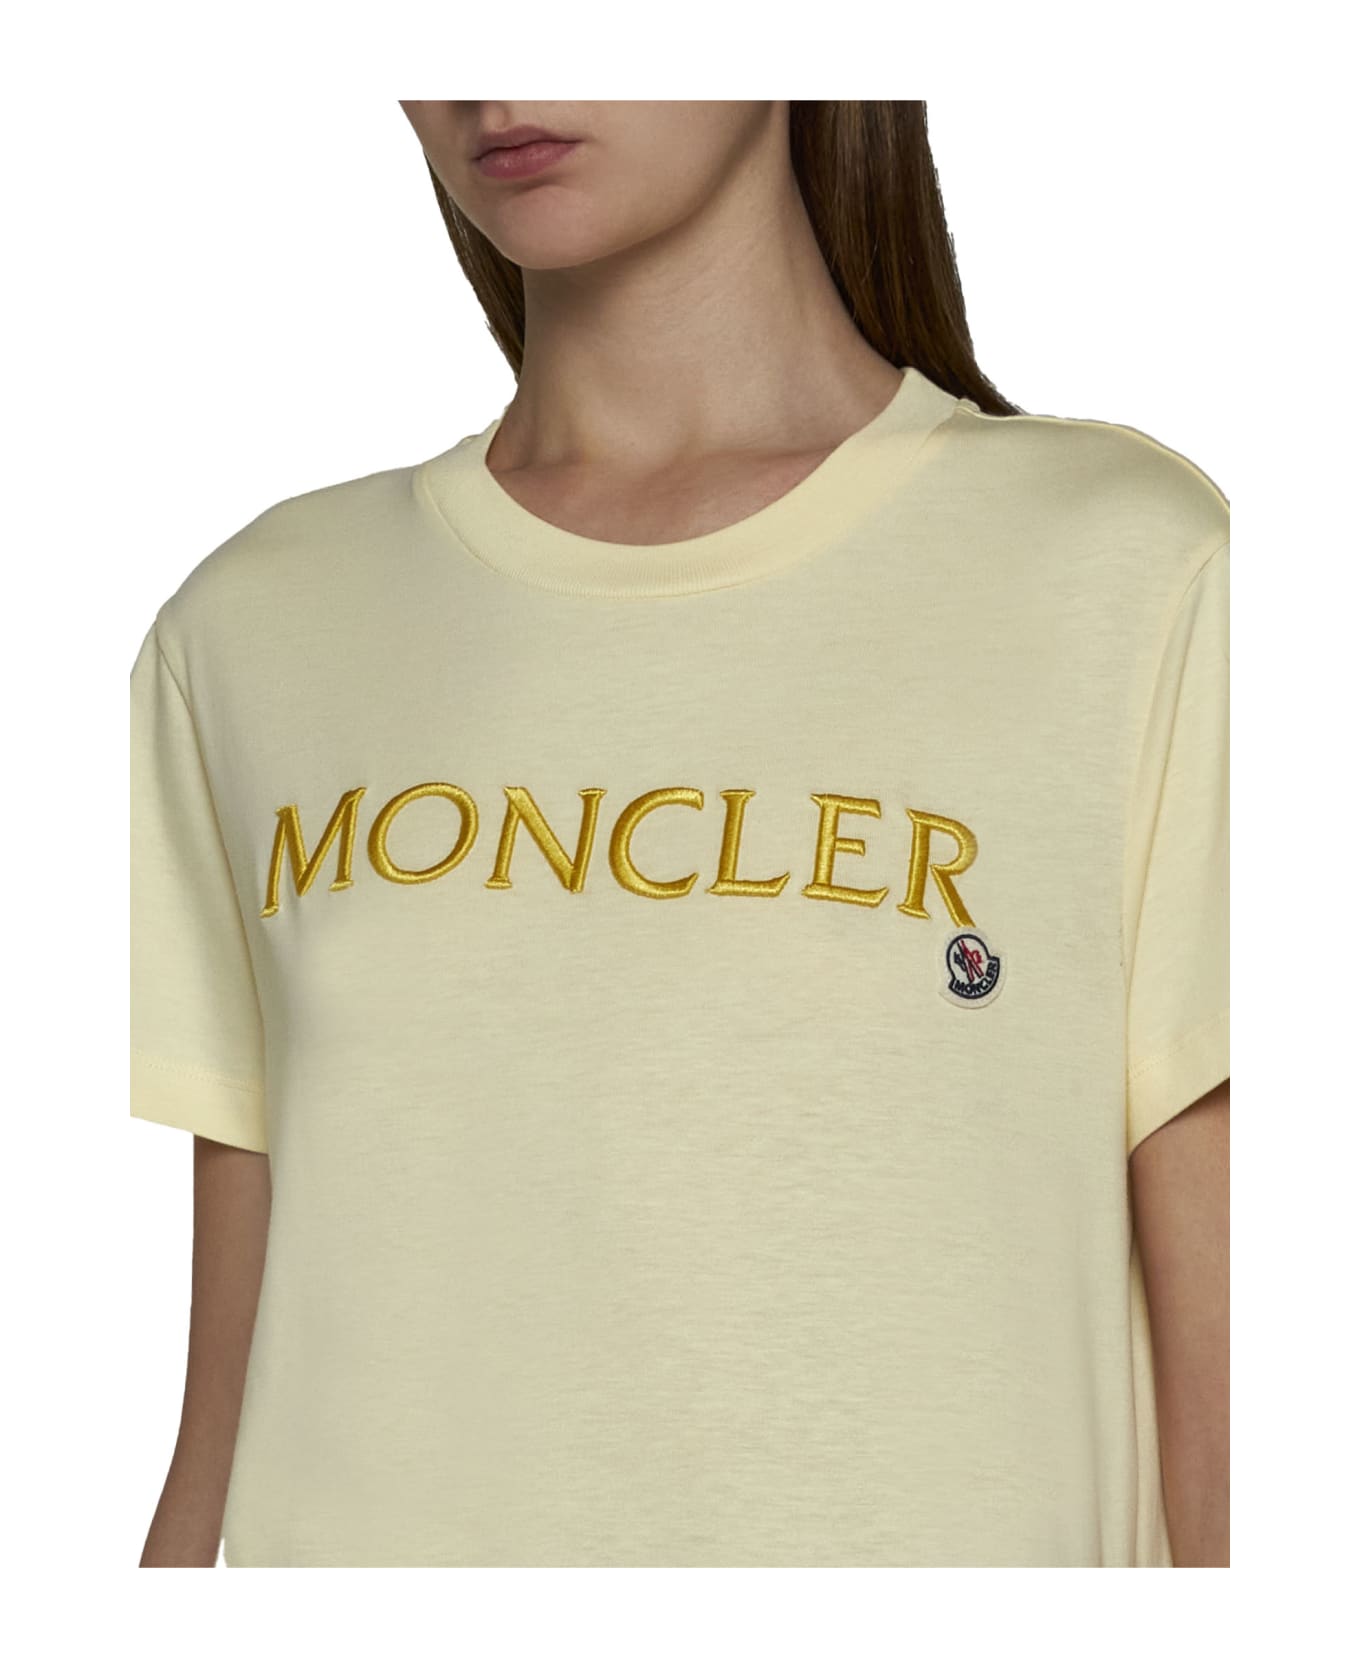 Moncler T-Shirt - Giallo